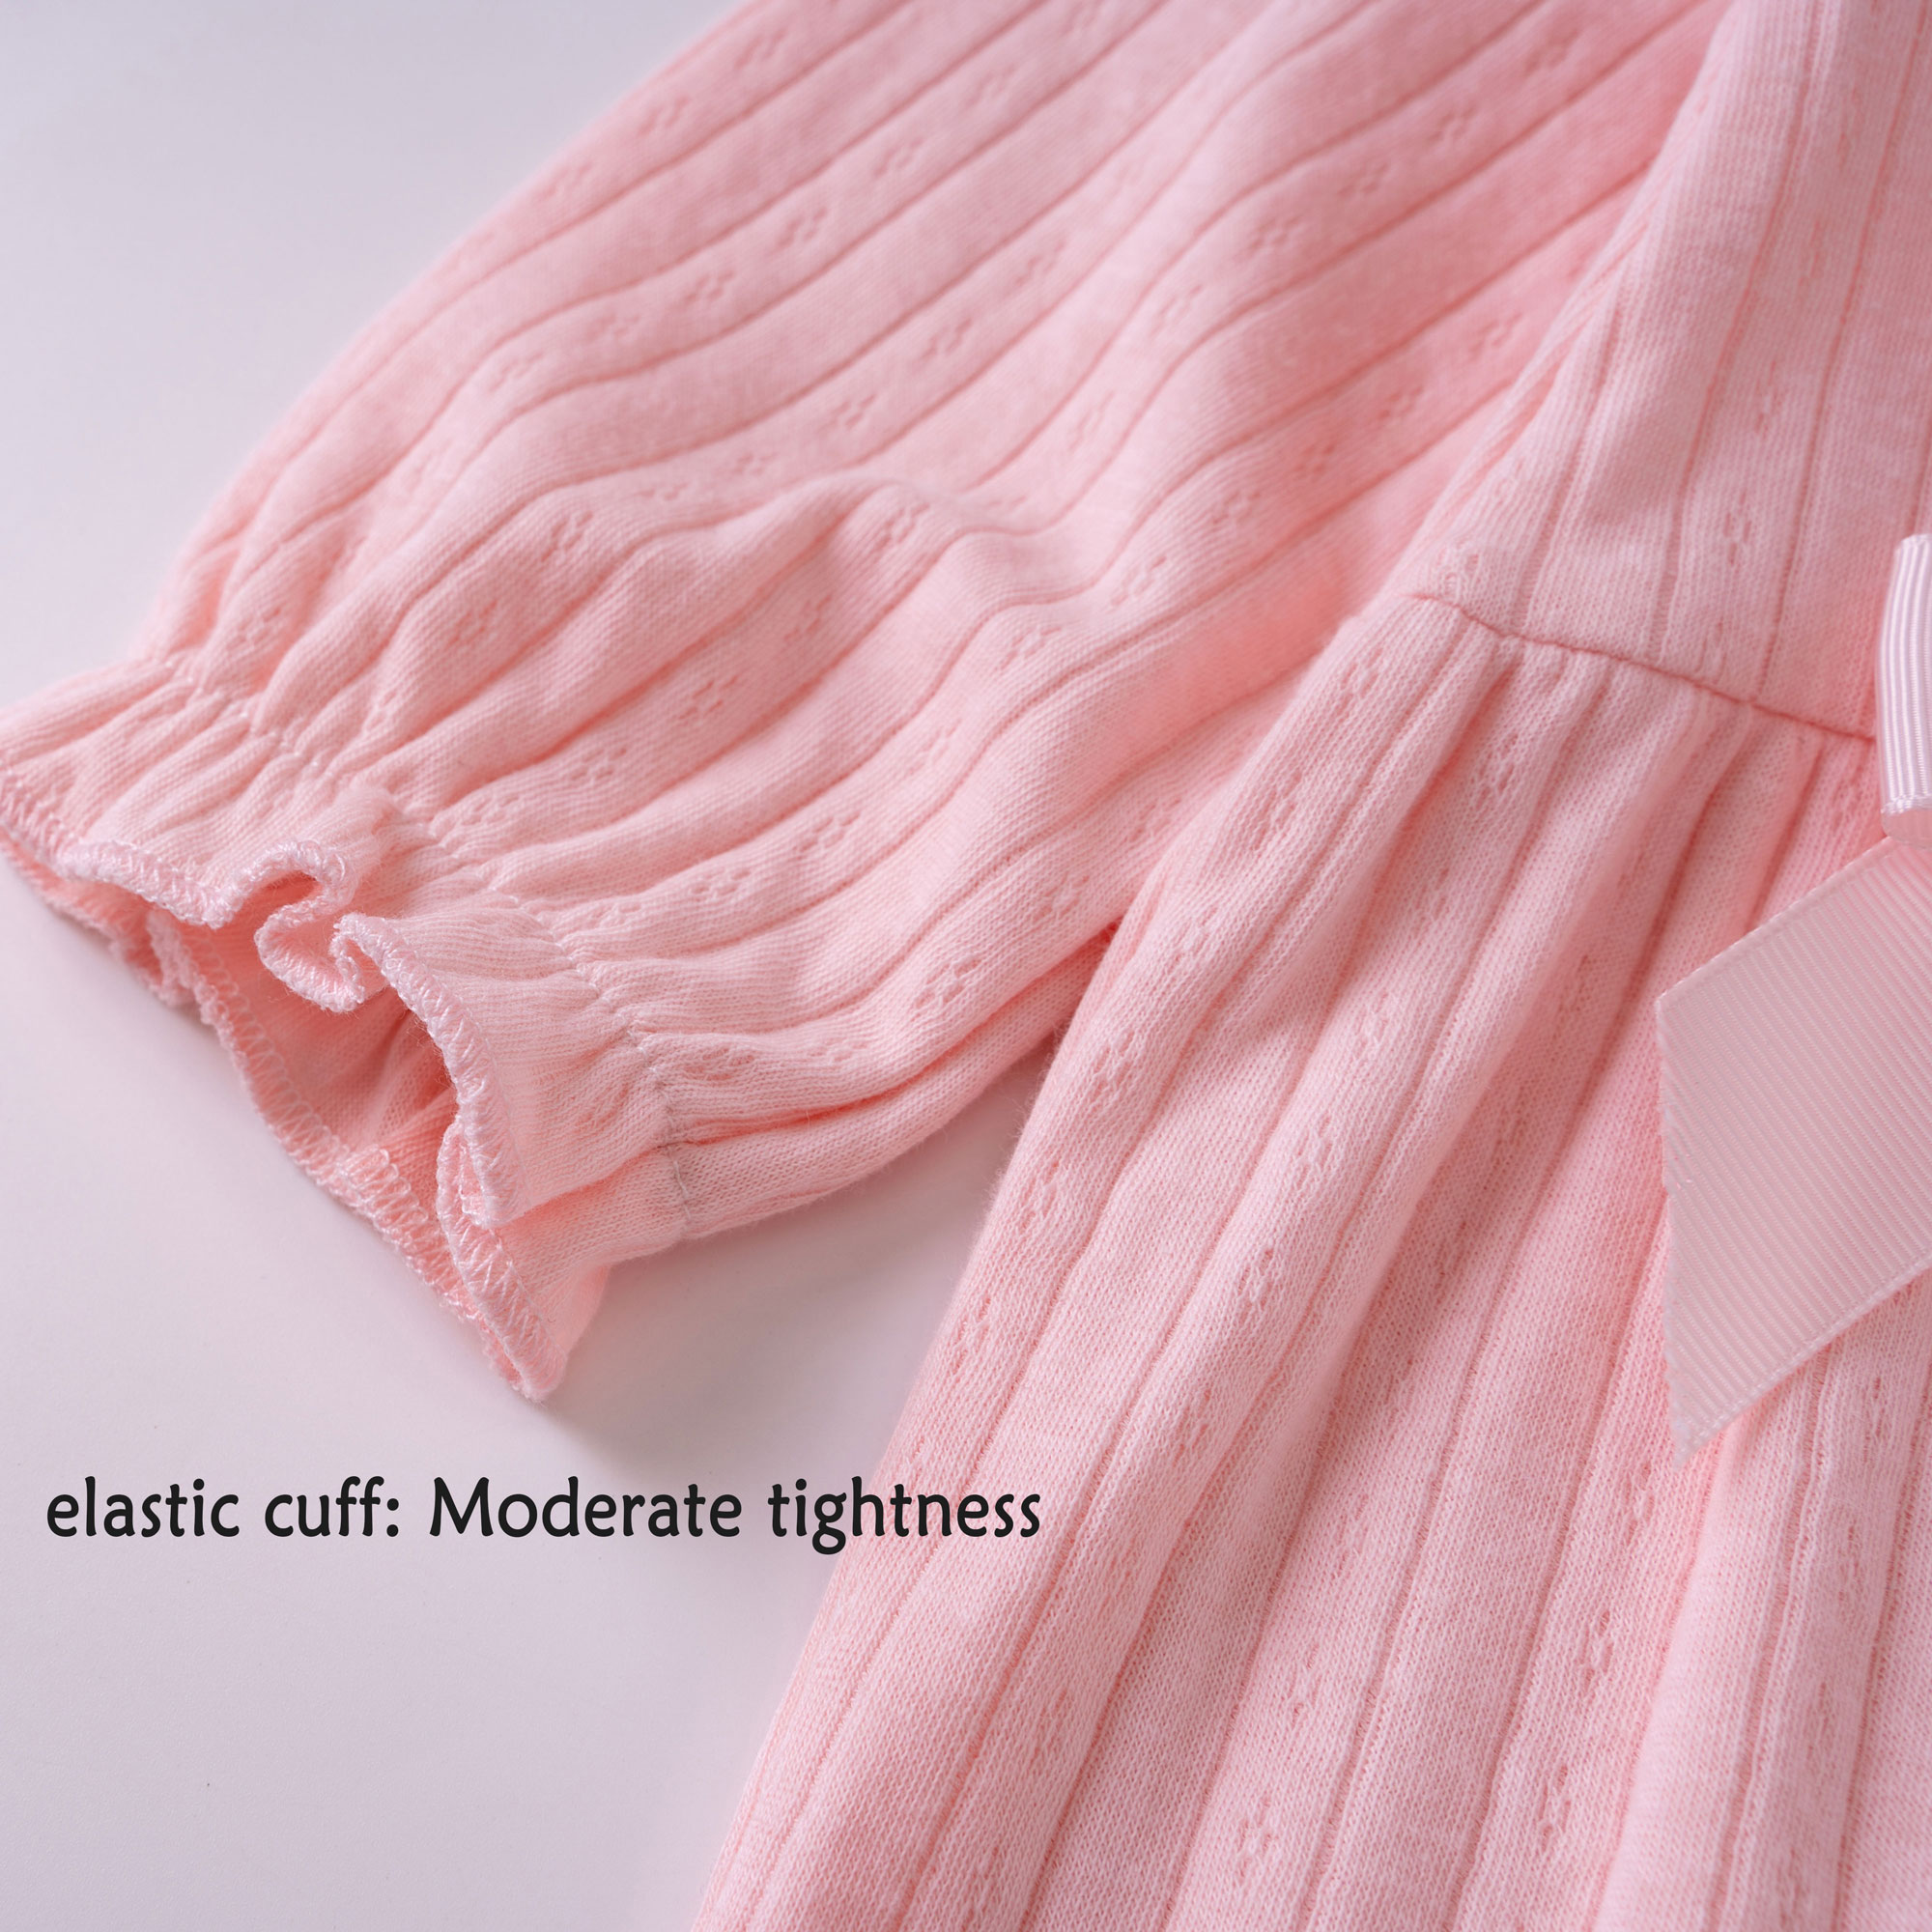 Bộ áo liền quần tay dài phối ren trang trí nơ hồng dễ thương cho bé